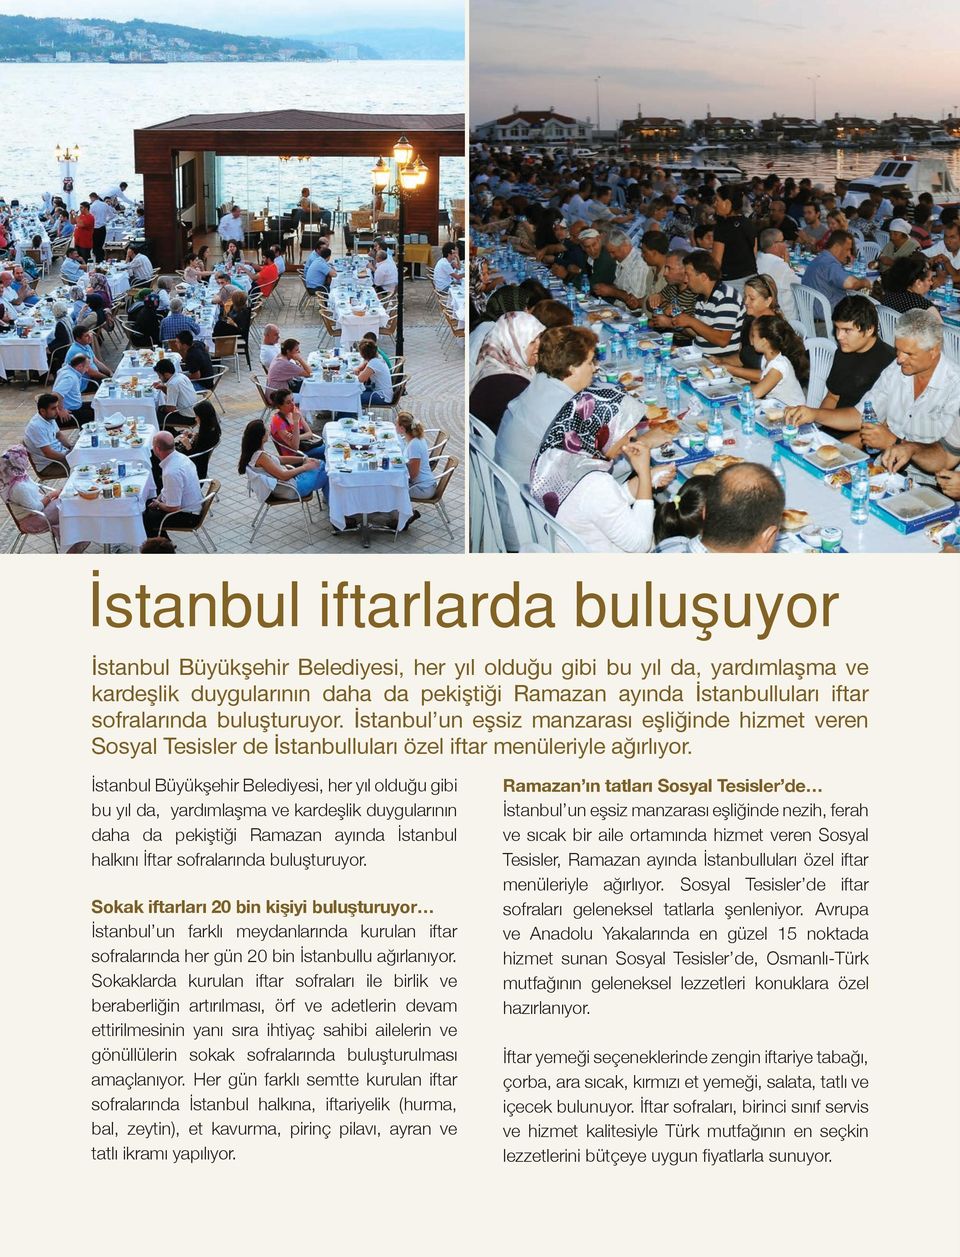 İstanbul Büyükşehir Belediyesi, her yıl olduğu gibi bu yıl da, yardımlaşma ve kardeşlik duygularının daha da pekiştiği Ramazan ayında İstanbul halkını İftar sofralarında buluşturuyor.